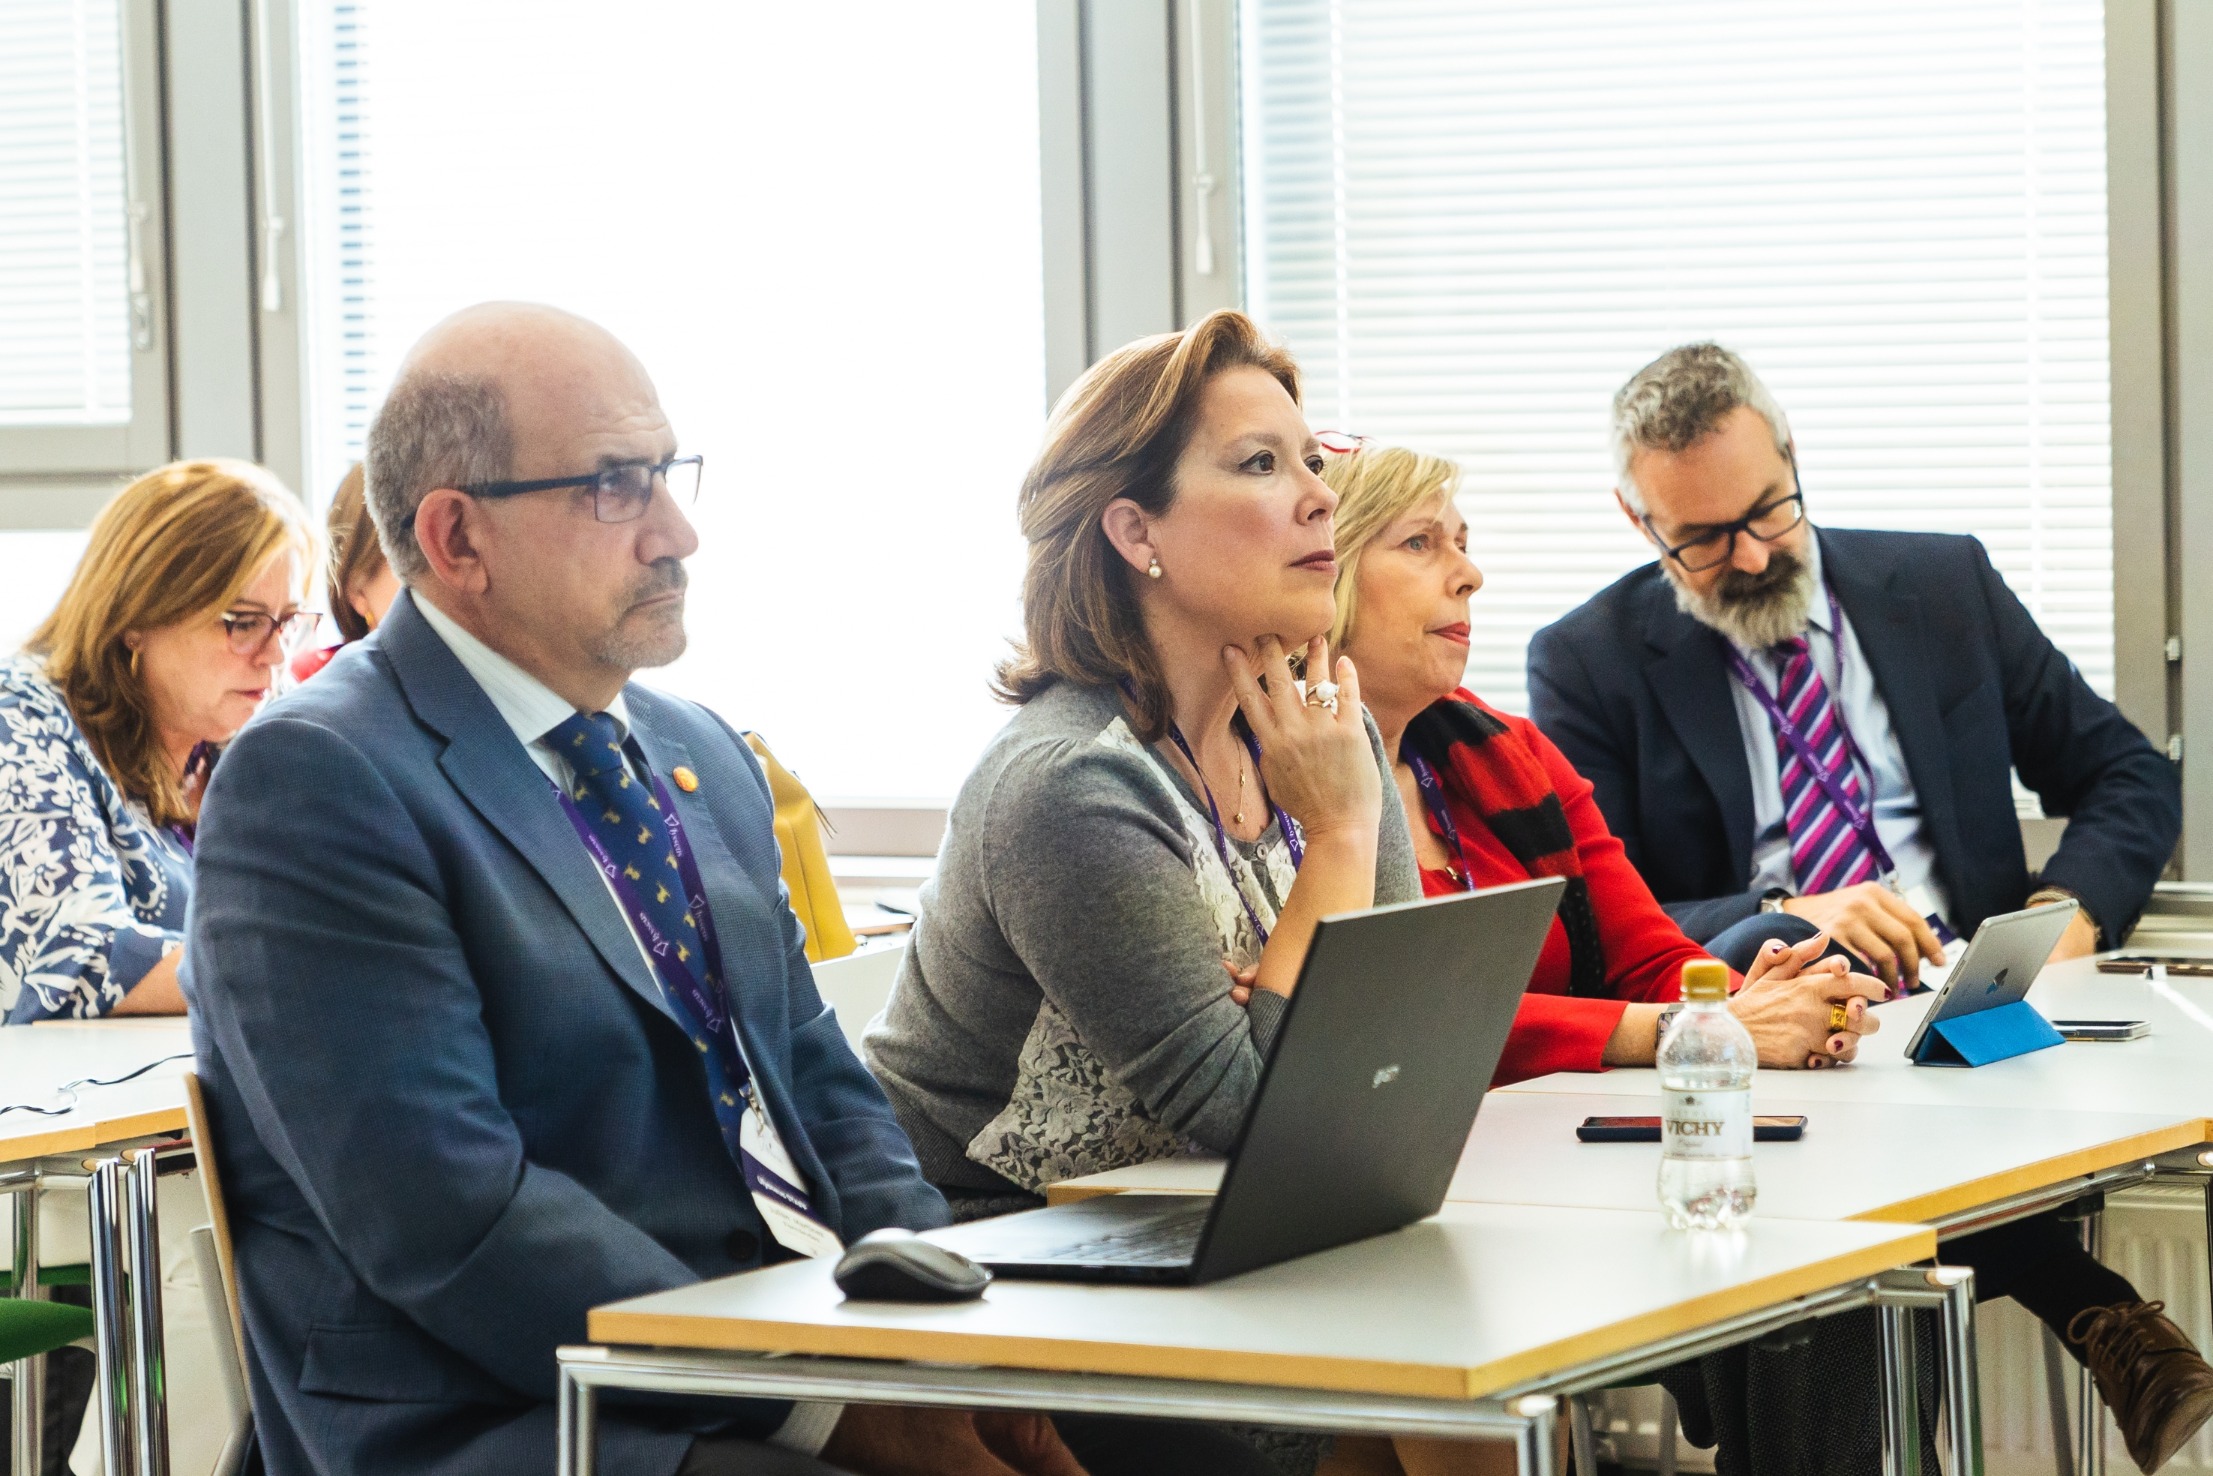 Meetings during Ulysseus Summit in Helsinki